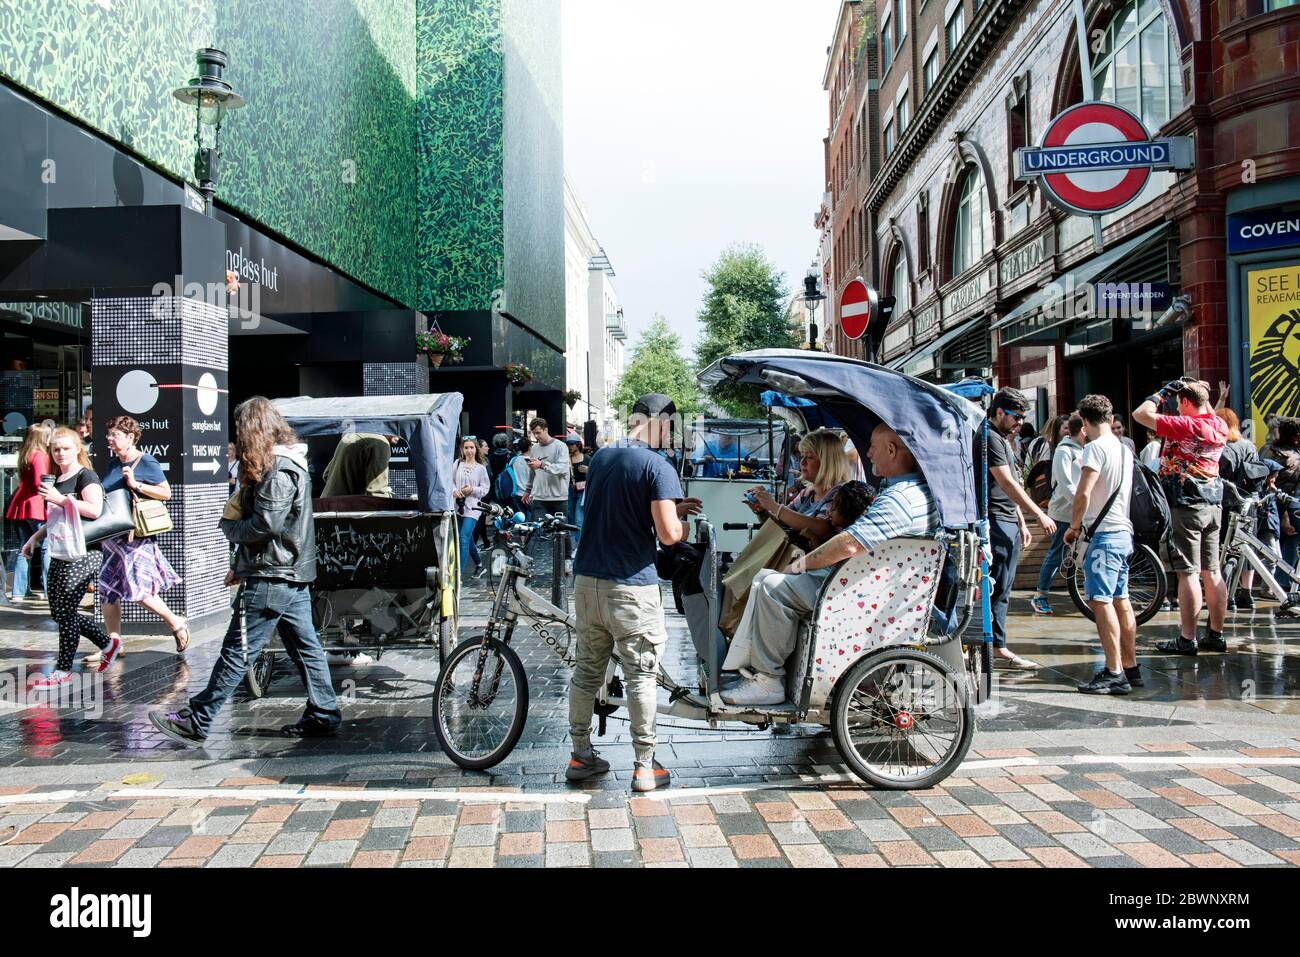 Ecotaxi, pedicab o risciò in bicicletta urbana con cavaliere e passanti Covent Garden, Londra Centrale, Inghilterra Gran Bretagna Foto Stock